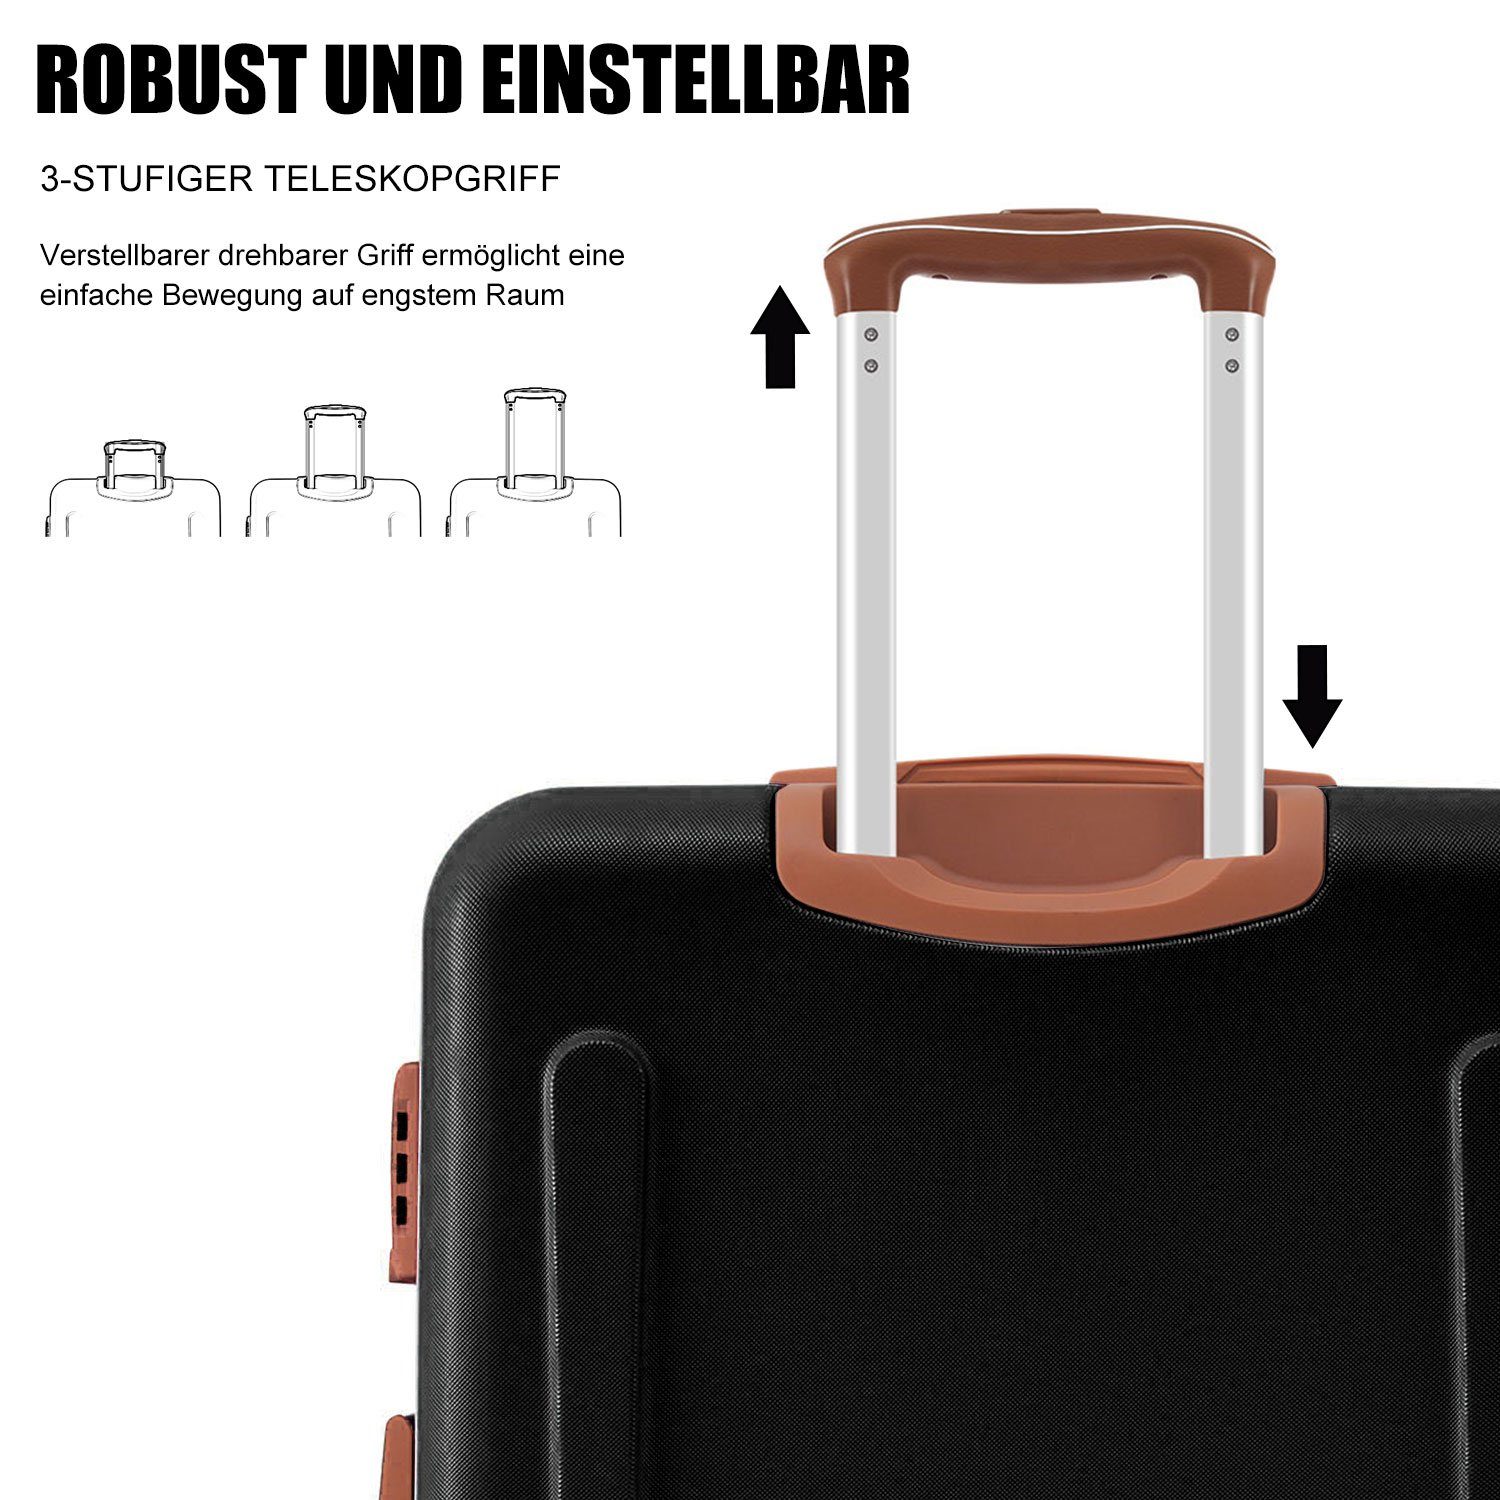 Handgepäck Ulife Modern 4 ABS-Material, Rollen Hartschalen-Trolley Reisekoffer TSA Zollschloss, Schwarz